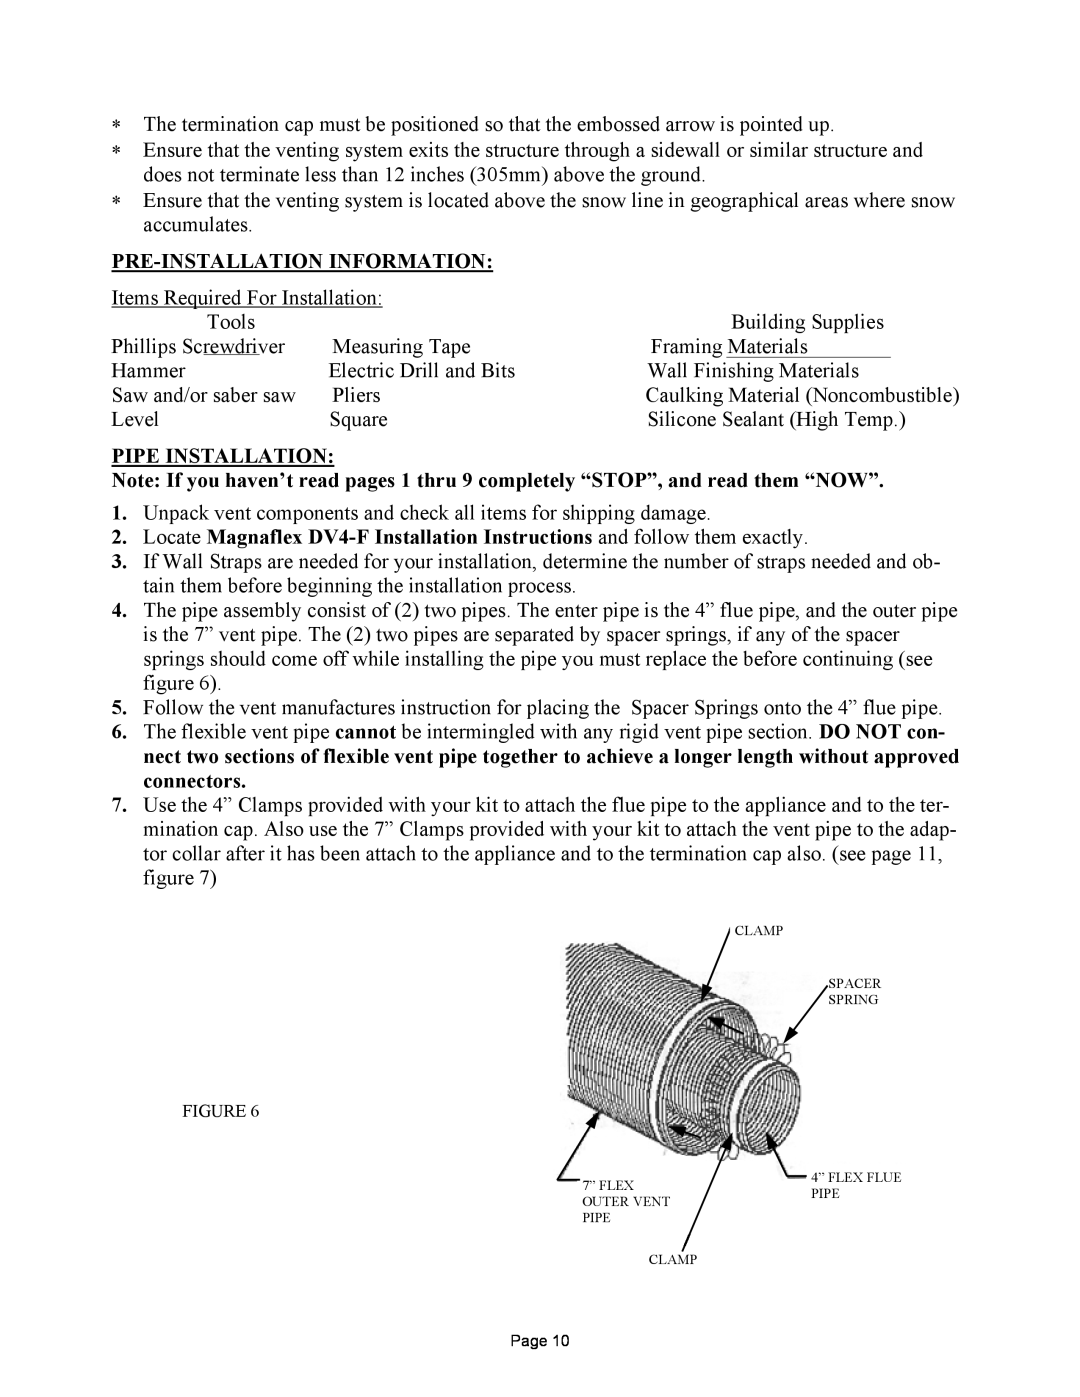 New Buck Corporation DV1000 manual Pre-Installationinformation, Pipe Installation 